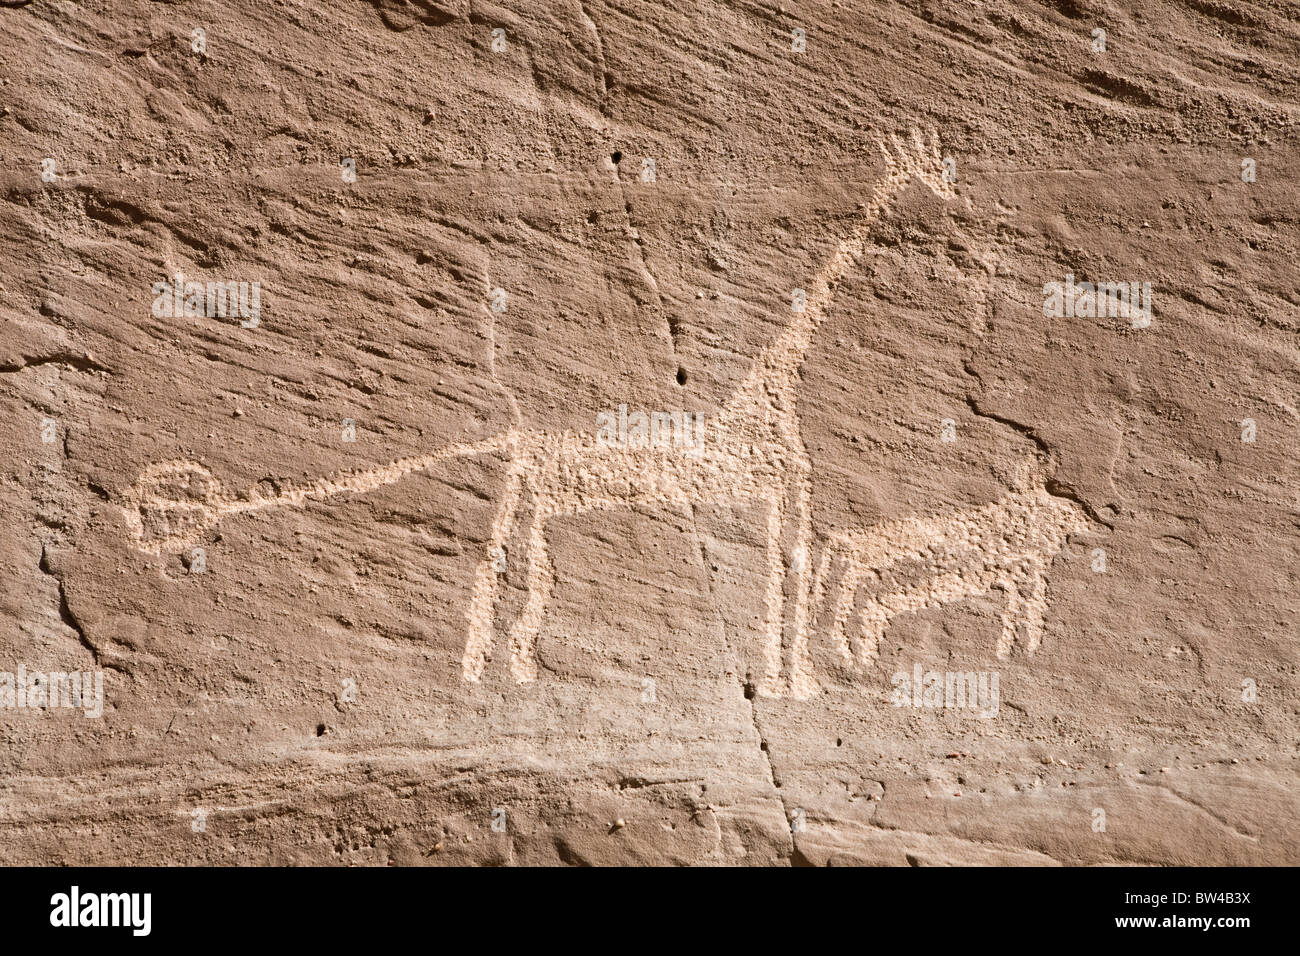 La girafe et l'animal plus petit gravés sur pierre dans le désert de l'Est de l'Égypte Banque D'Images